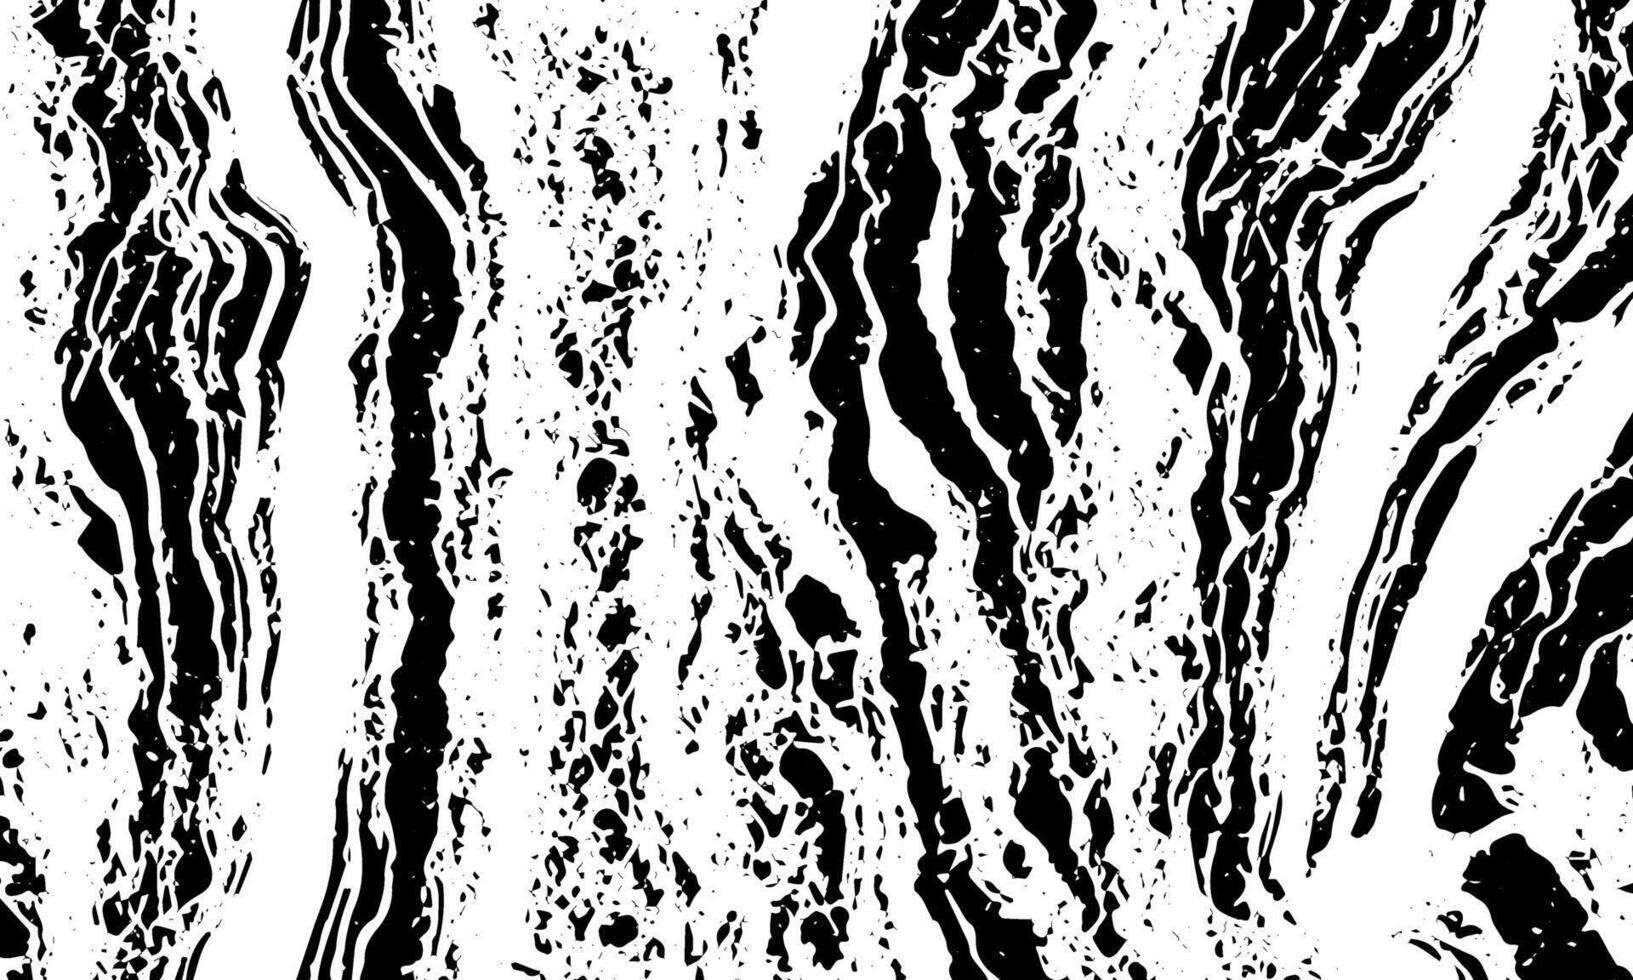 grunge detaljerad svart abstrakt textur vektor